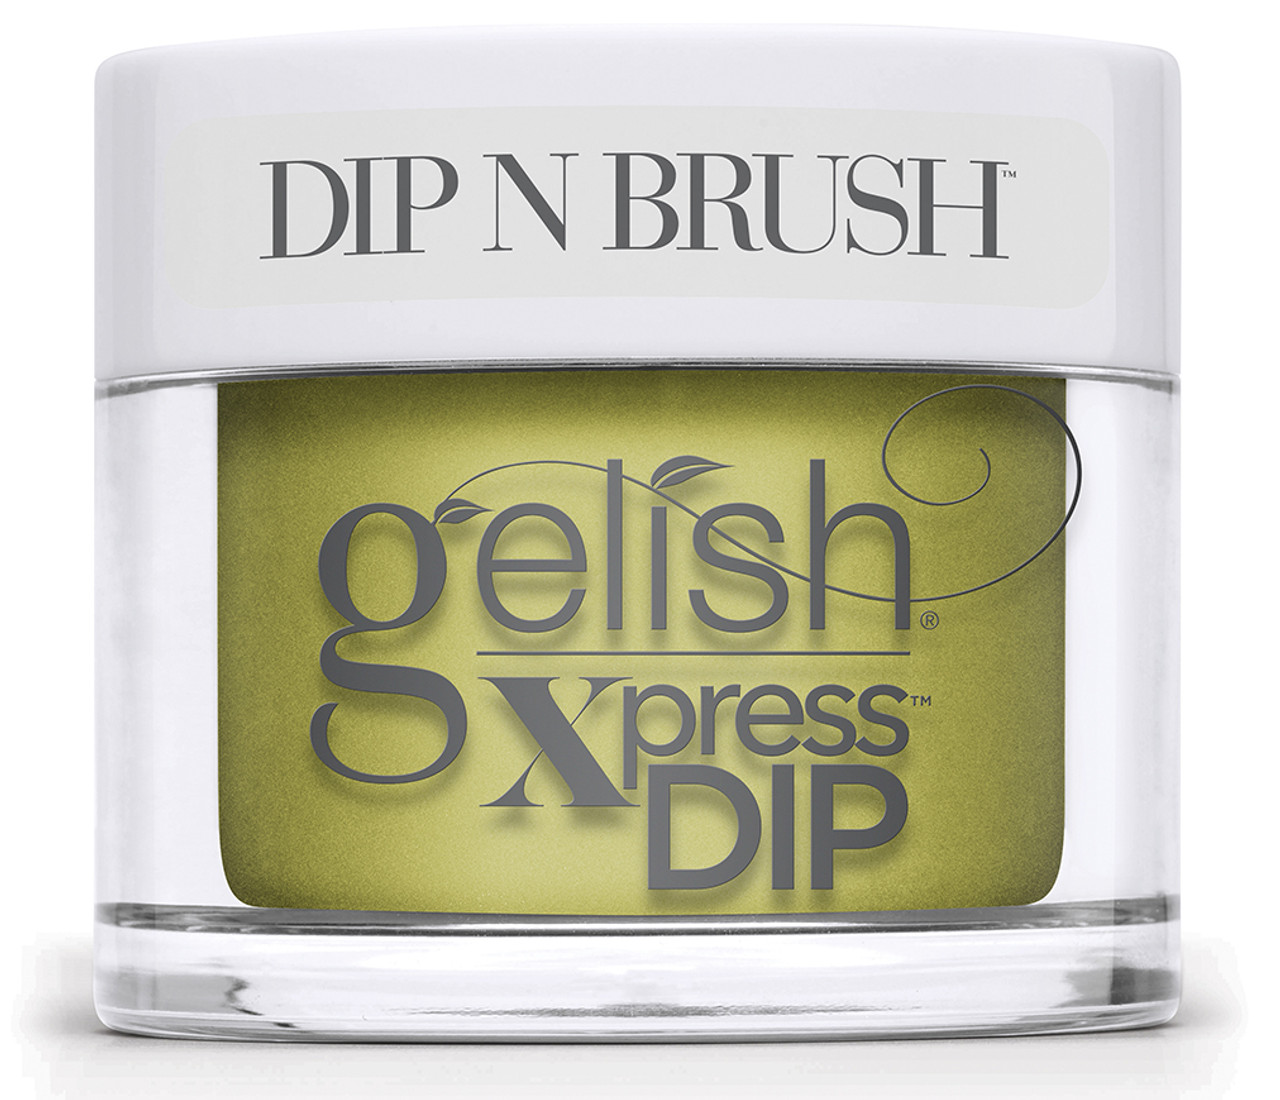 Gelish Xpress Dip Flying Out Loud - 1.5 oz / 43 g